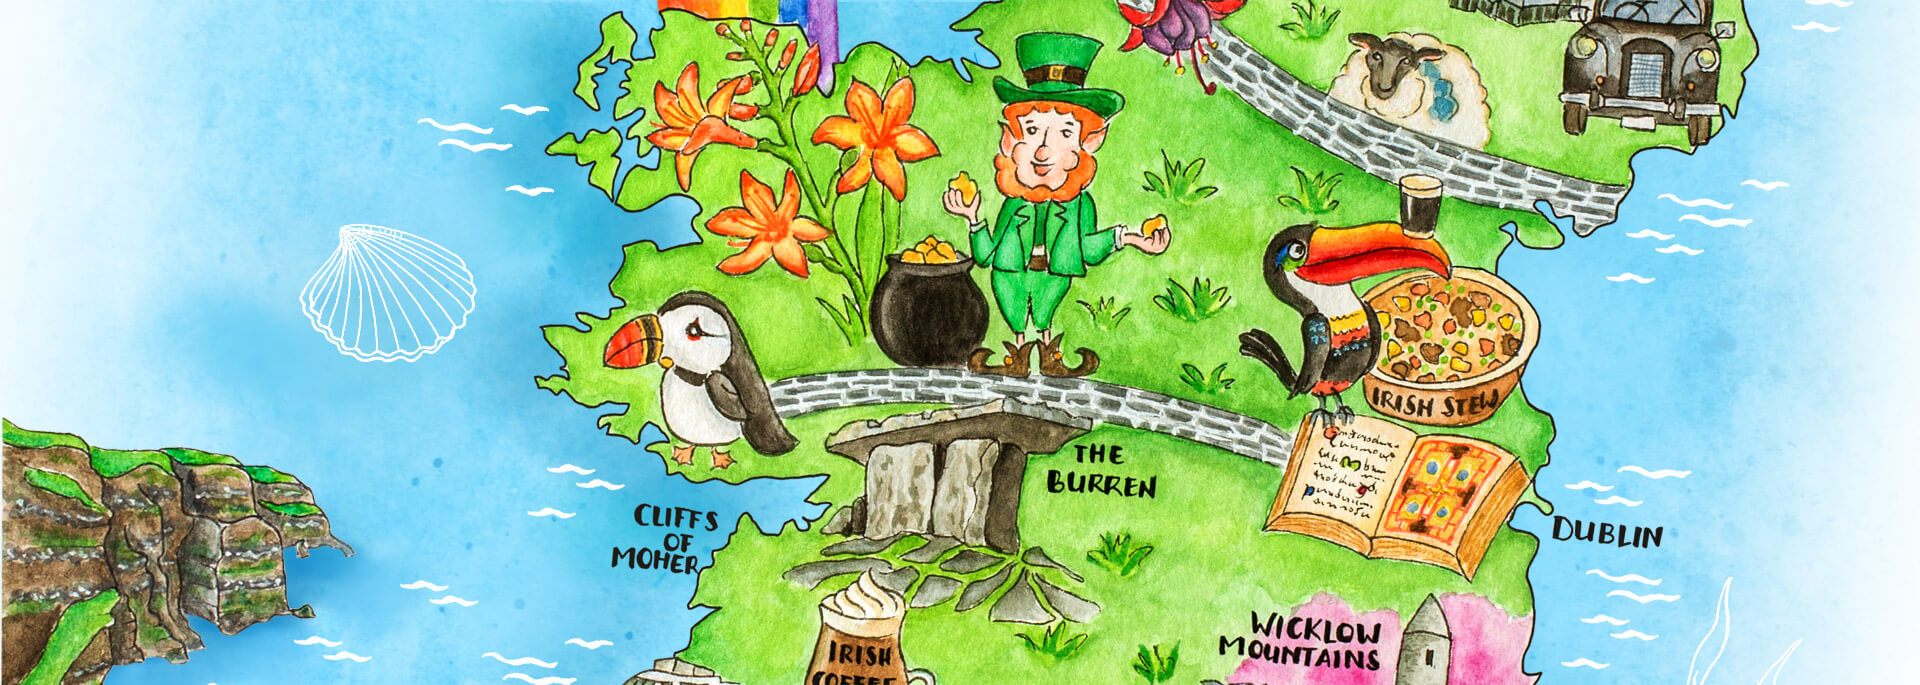 Kalender Illustrierte Inseln 2017 – August: Irland